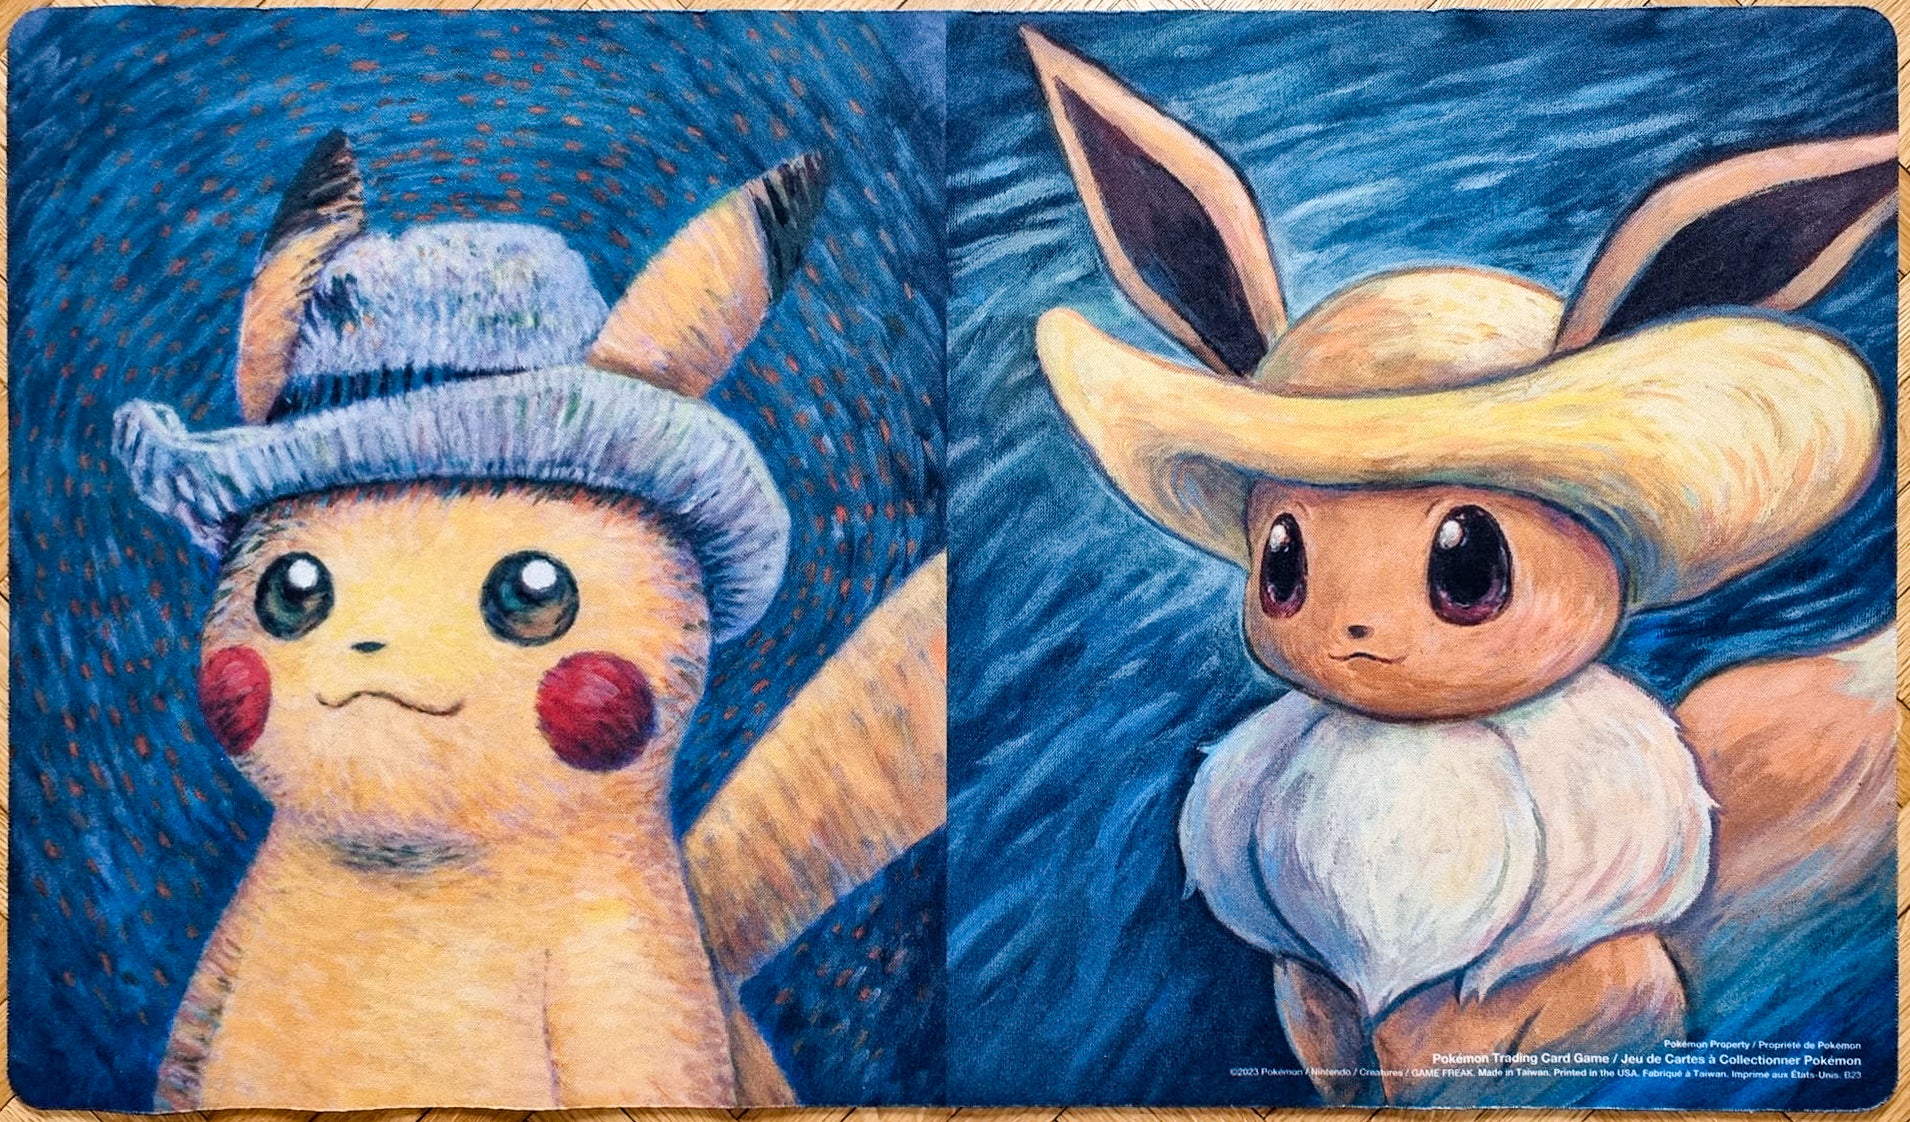 Pikachu & Eevee Van Gogh Museum Collaboration - Pokémon Playmat